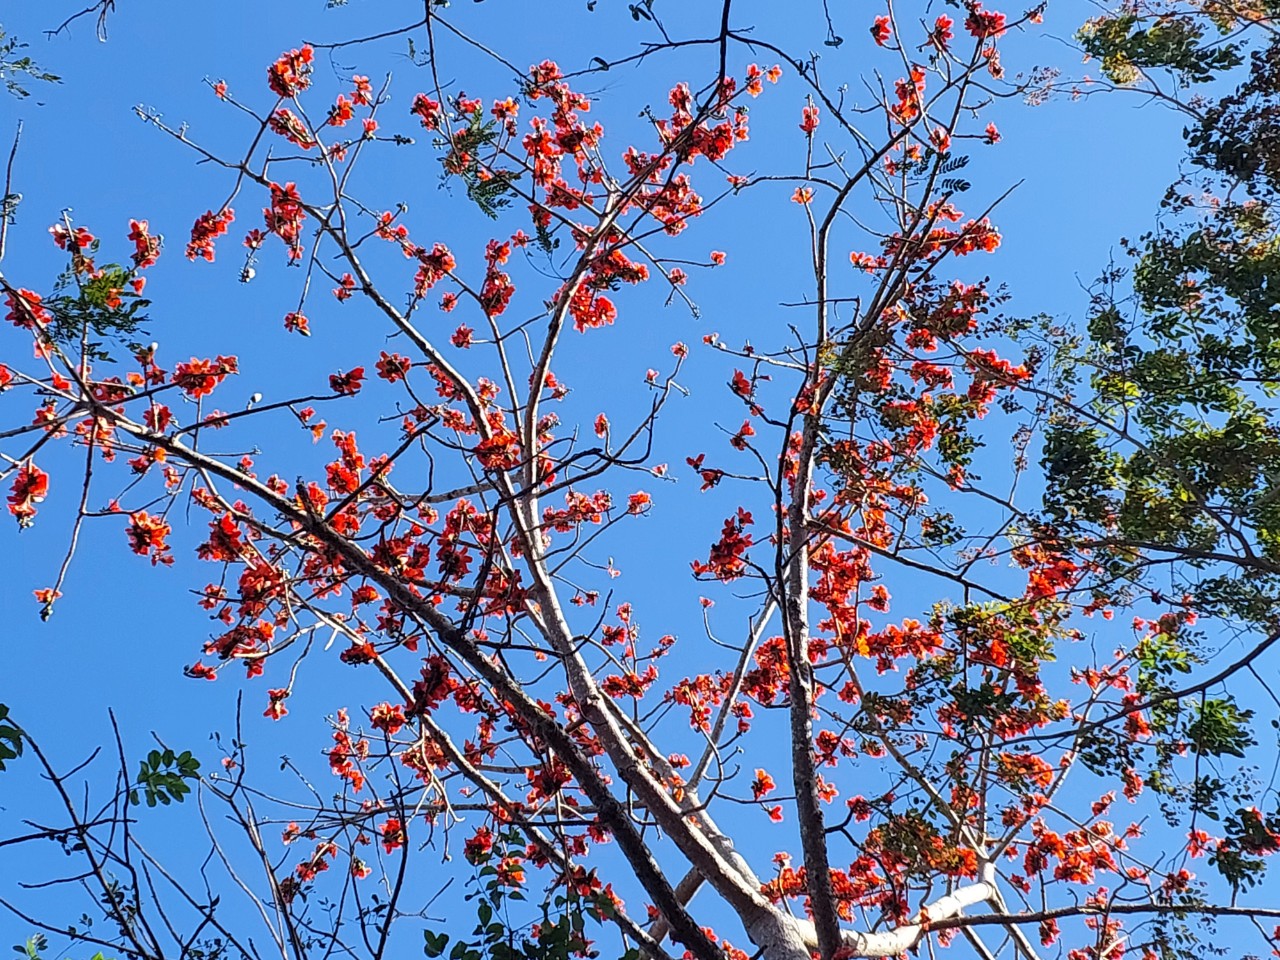 Loài hoa tên nghe như muốn hát, đẹp cuốn hút, đỏ say mê ở Đắk Lắk thực ra là hoa gì rất quen? - Ảnh 6.